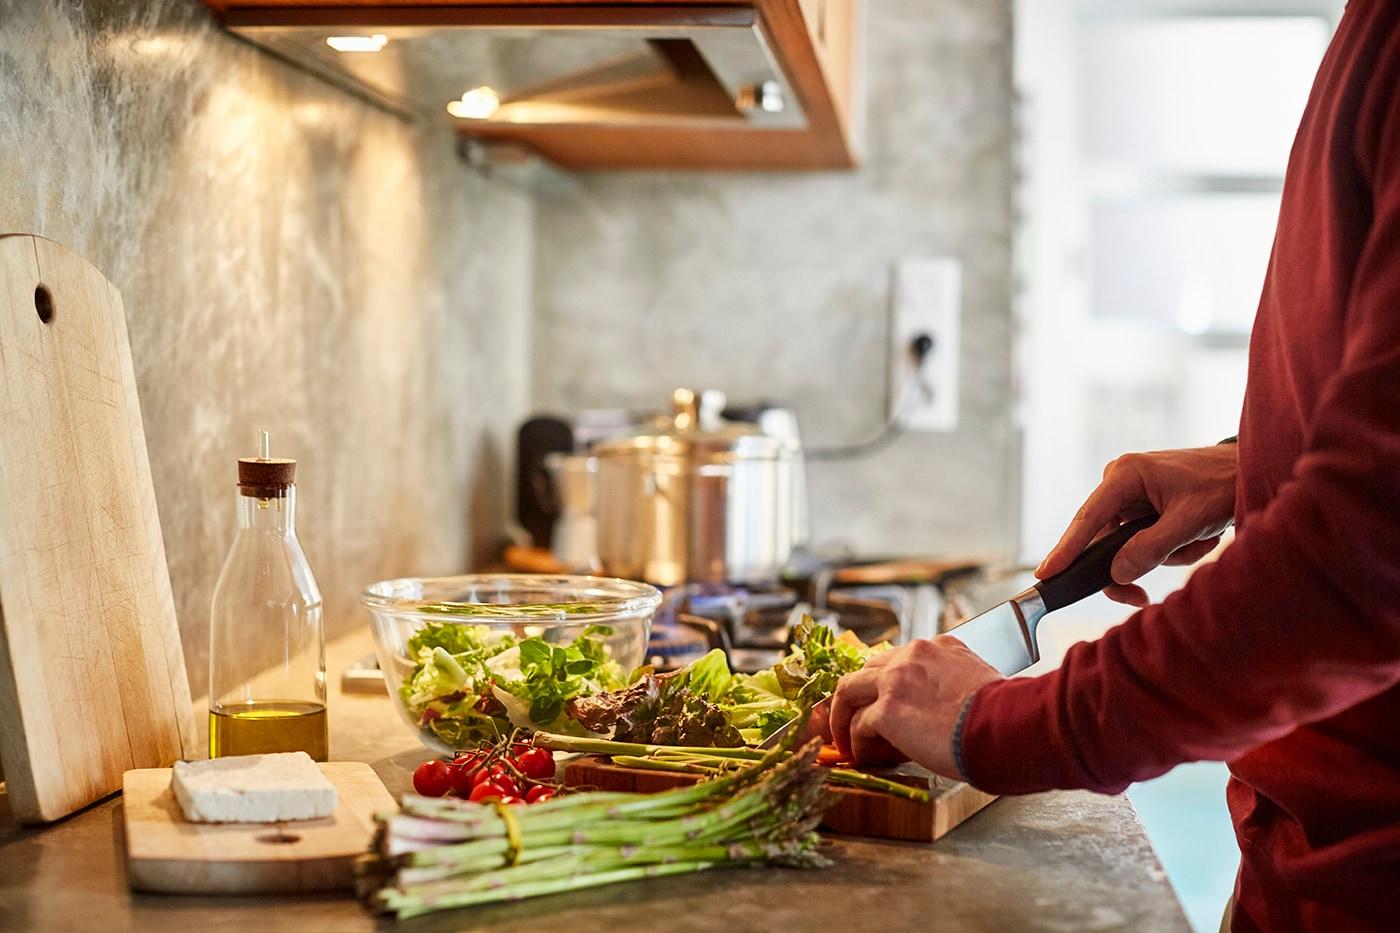 Une personne portant un chandail rouge hache des légumes sur une planche à découper. Sur le comptoir se trouvent de la laitue, des tomates, des courgettes, de l’huile d’olive et un bloc de fromage féta.